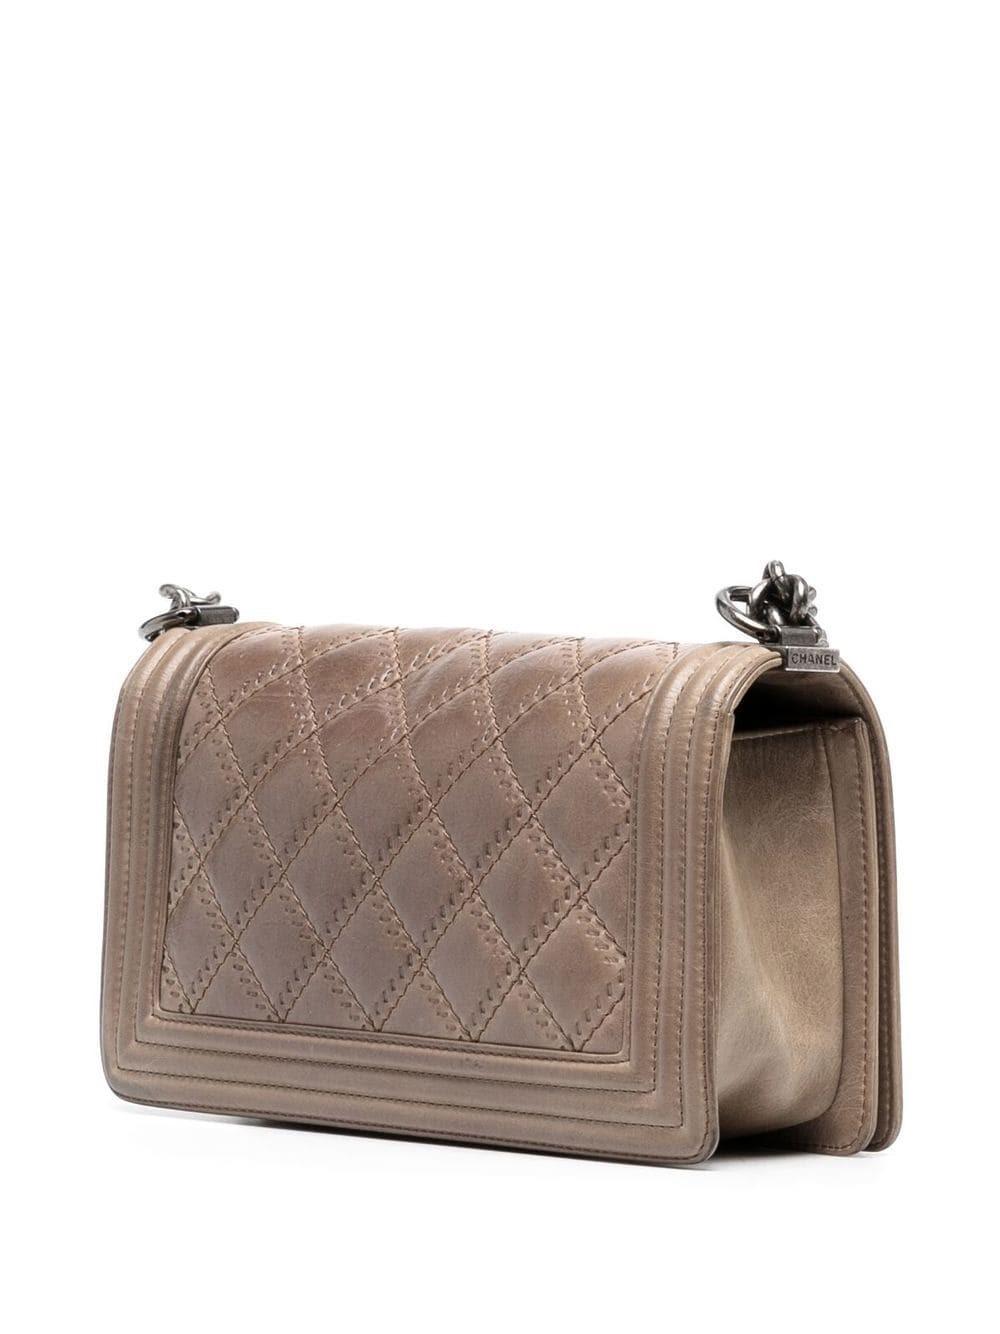 Diese Medium Boy Bag von Chanel ist eine der kultigsten Taschen aller Zeiten. Sie ist aus gestepptem, gealtertem Leder gefertigt und verfügt über einen unverkennbaren Doppel-C-Verschluss. Der Leder-Kettenriemen kann so eingestellt werden, dass man